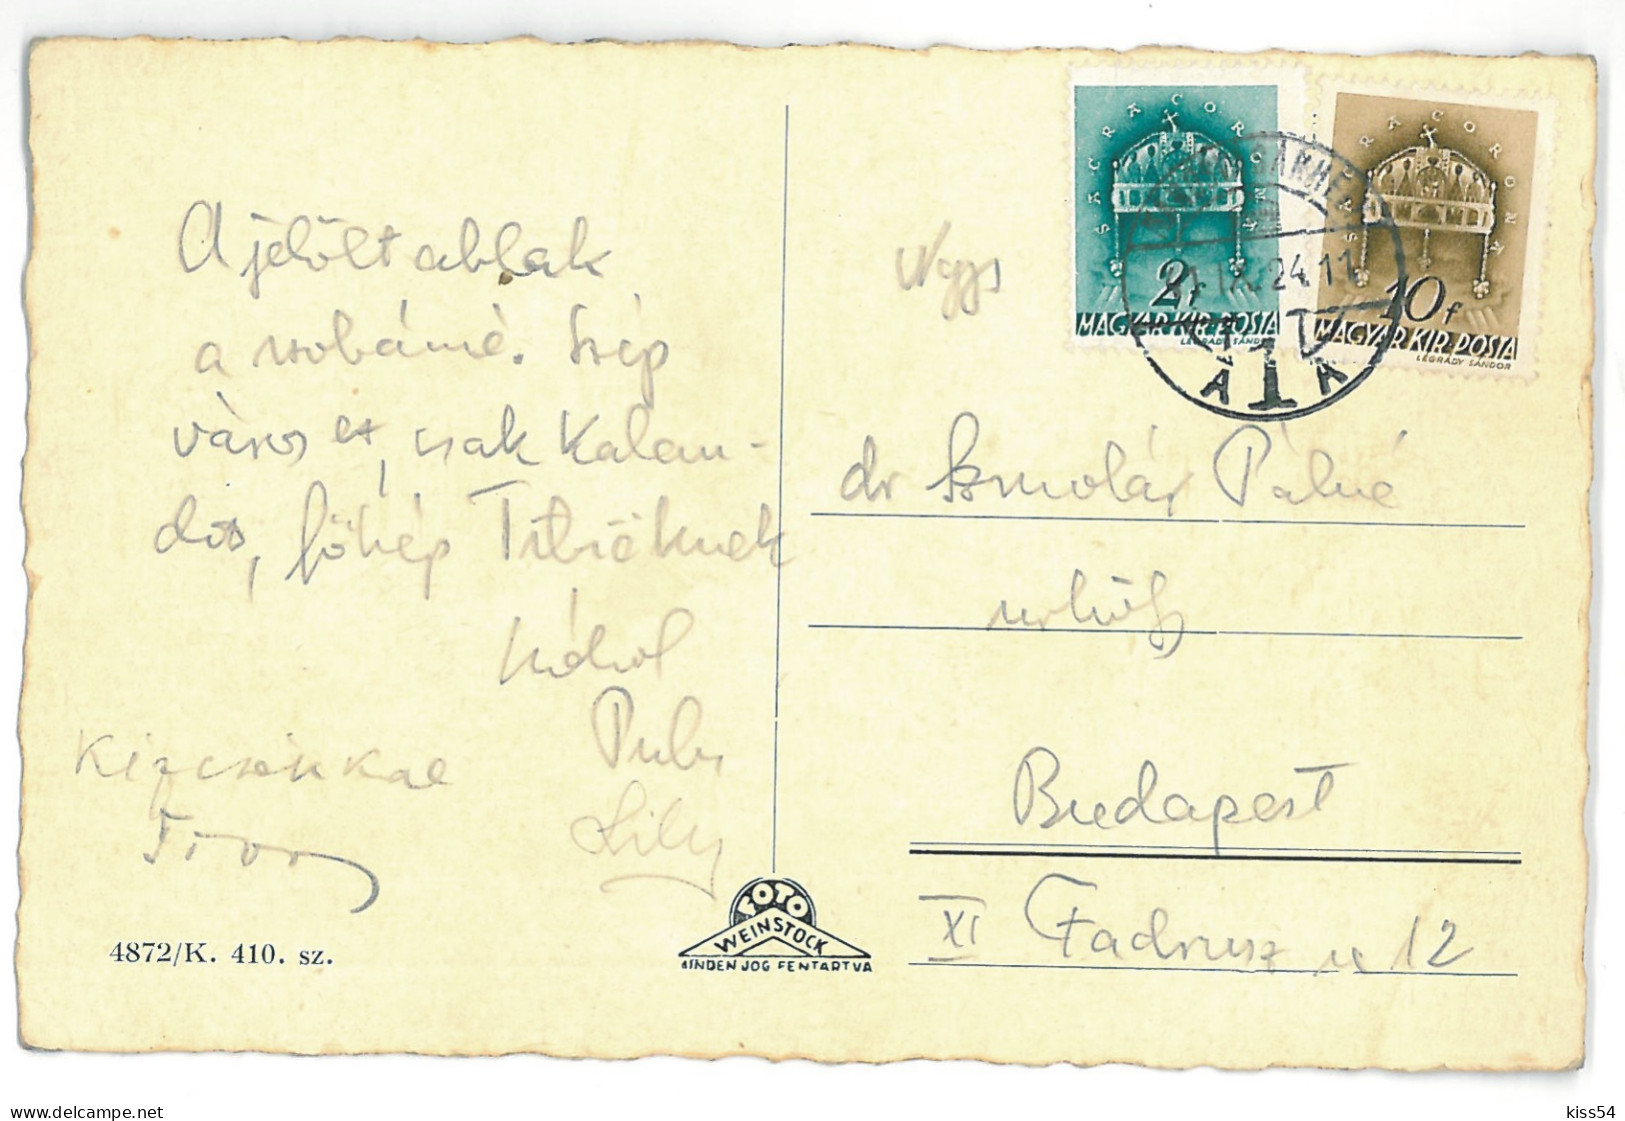 RO 45 - 14907 TARGU MURES, Market, Romania - Old Postcard - Used - 1941 - Roemenië